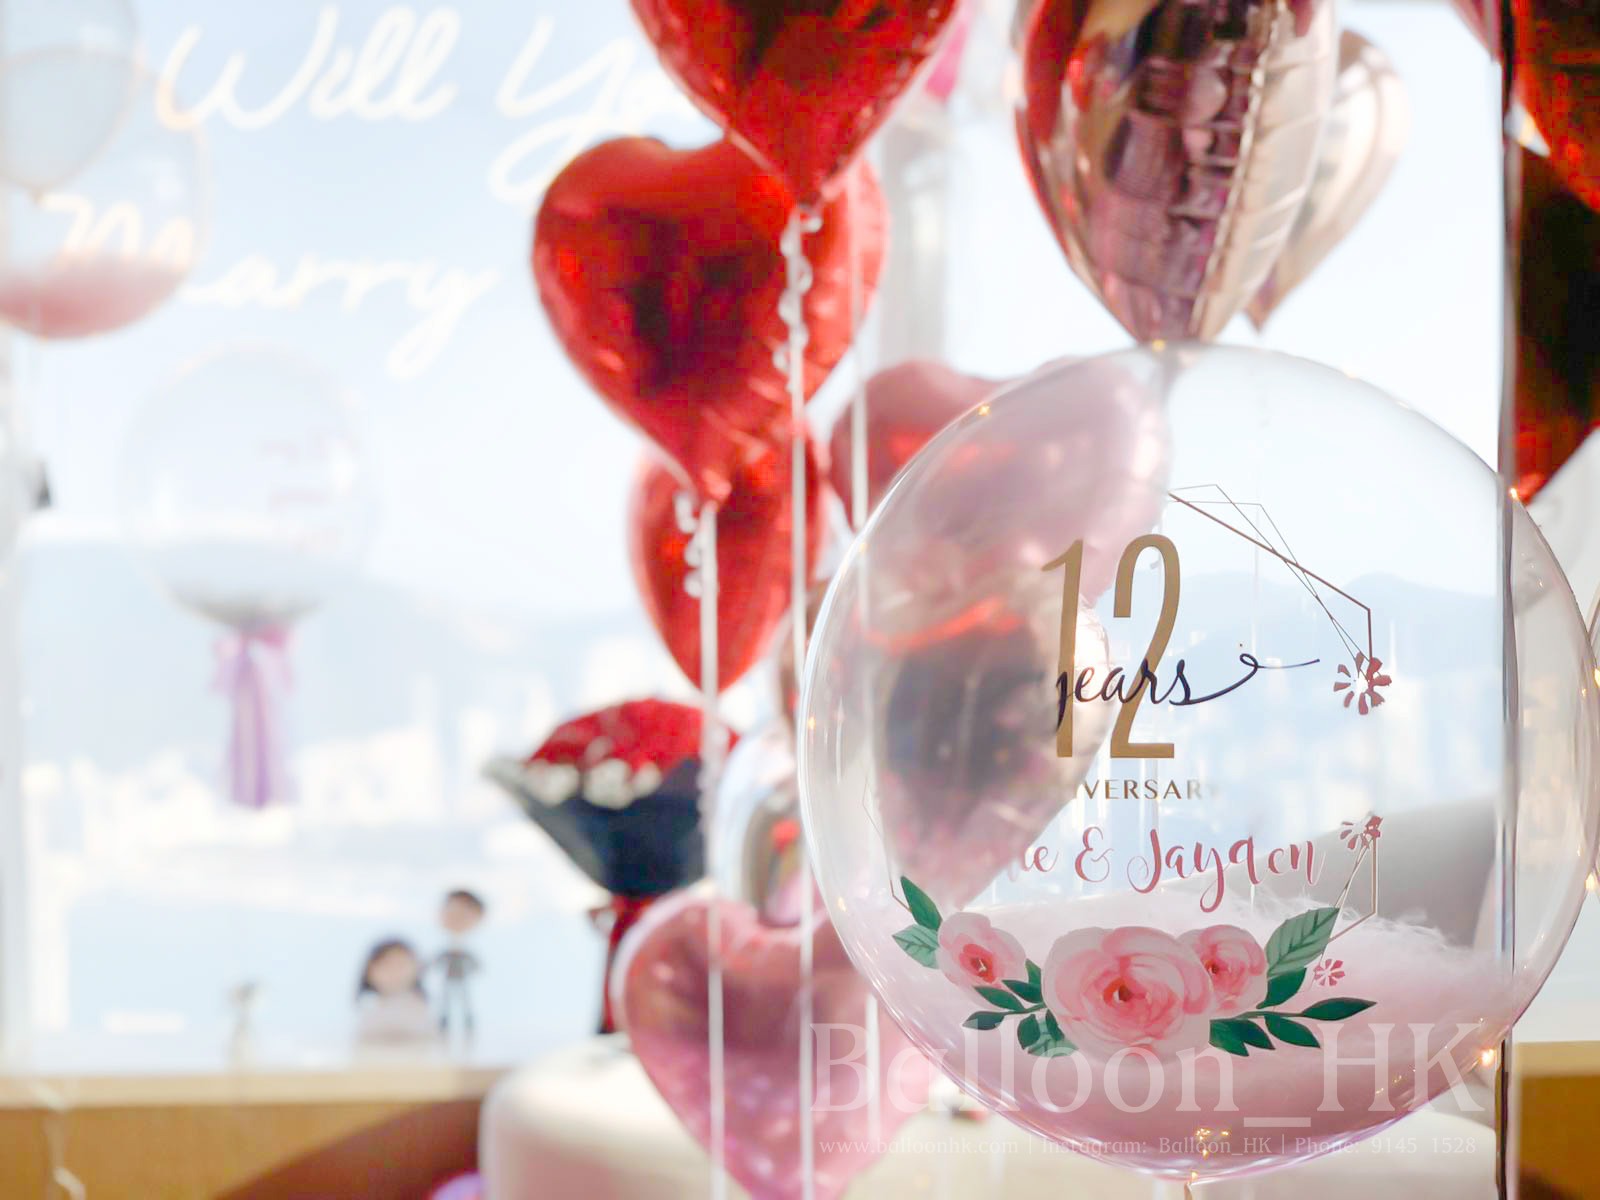 彩印水晶羽毛氣球 +  Anniversary 主題  (3天預訂)